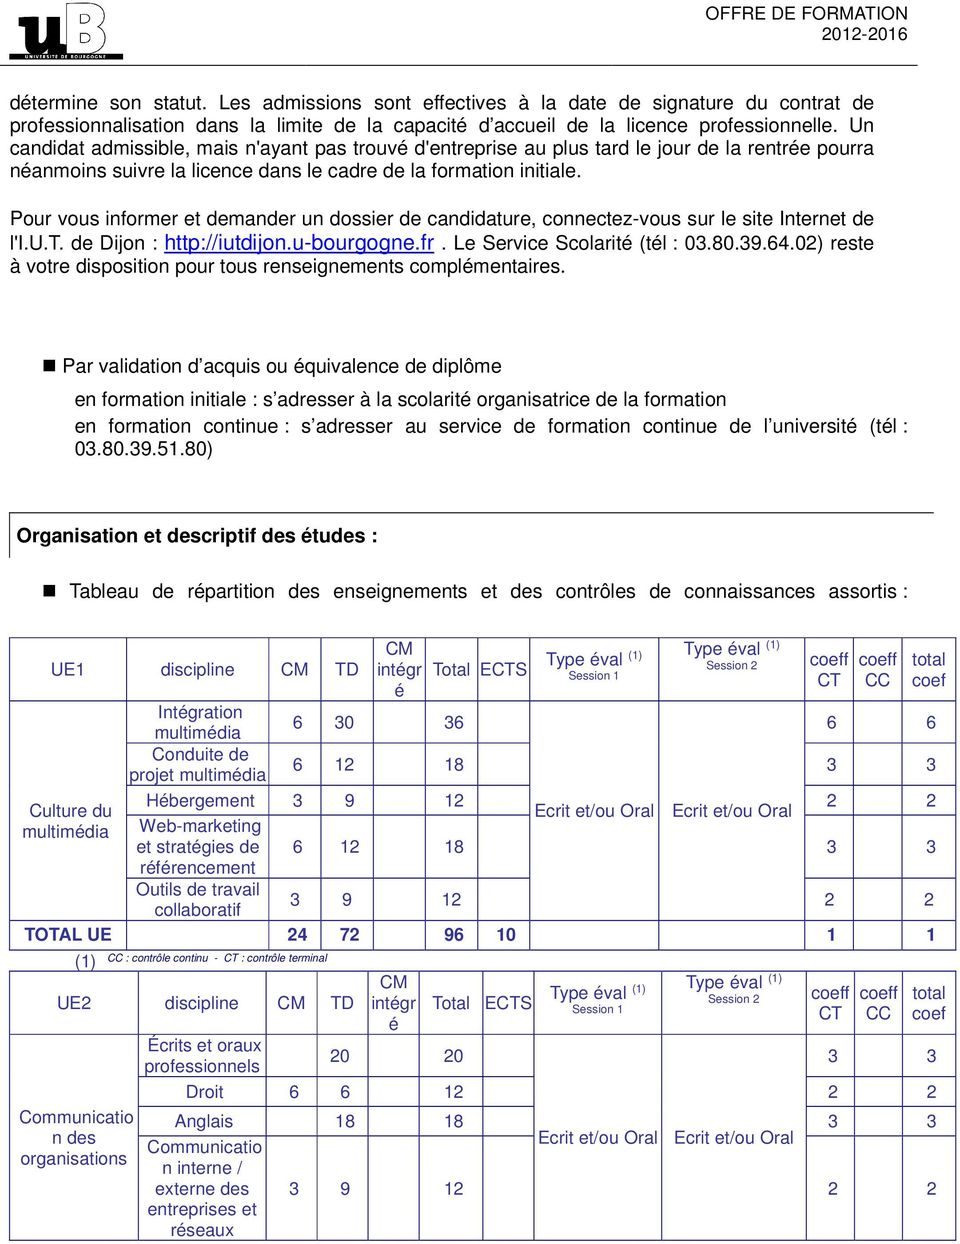 Pour vous informer et demander un dossier de candidature, connectez-vous sur le site Internet de l'i.u.t. de Dijon : http://iutdijon.u-bourgogne.fr. Le Service Scolarit (tl : 03.80.39.64.